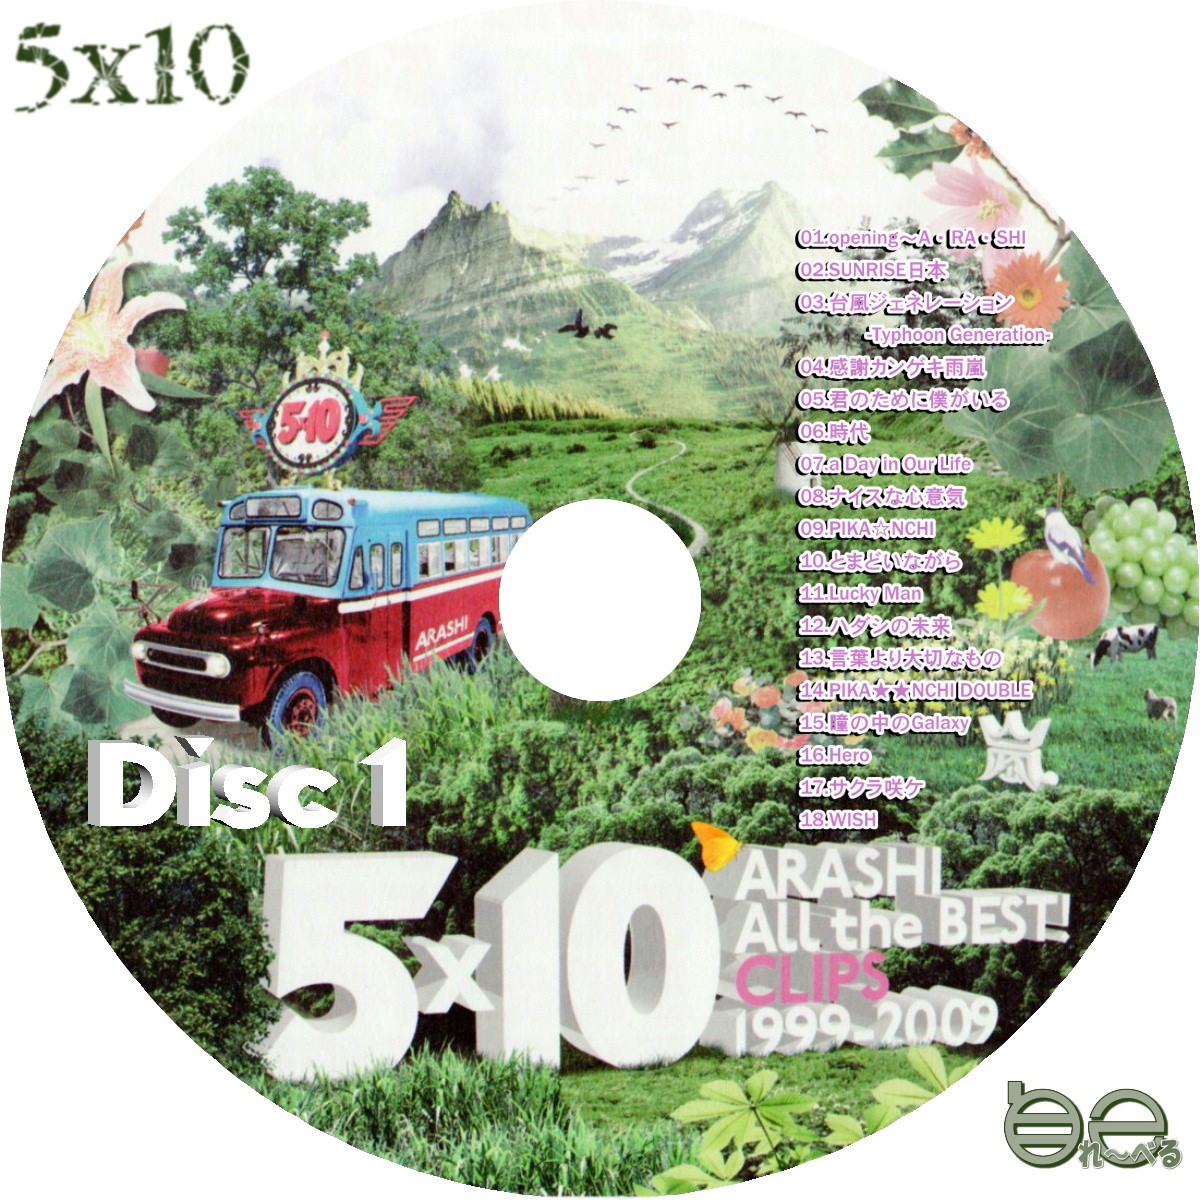 嵐 5 10 All the BEST CLIPS 1999-2009 DVD - arkiva.gov.al